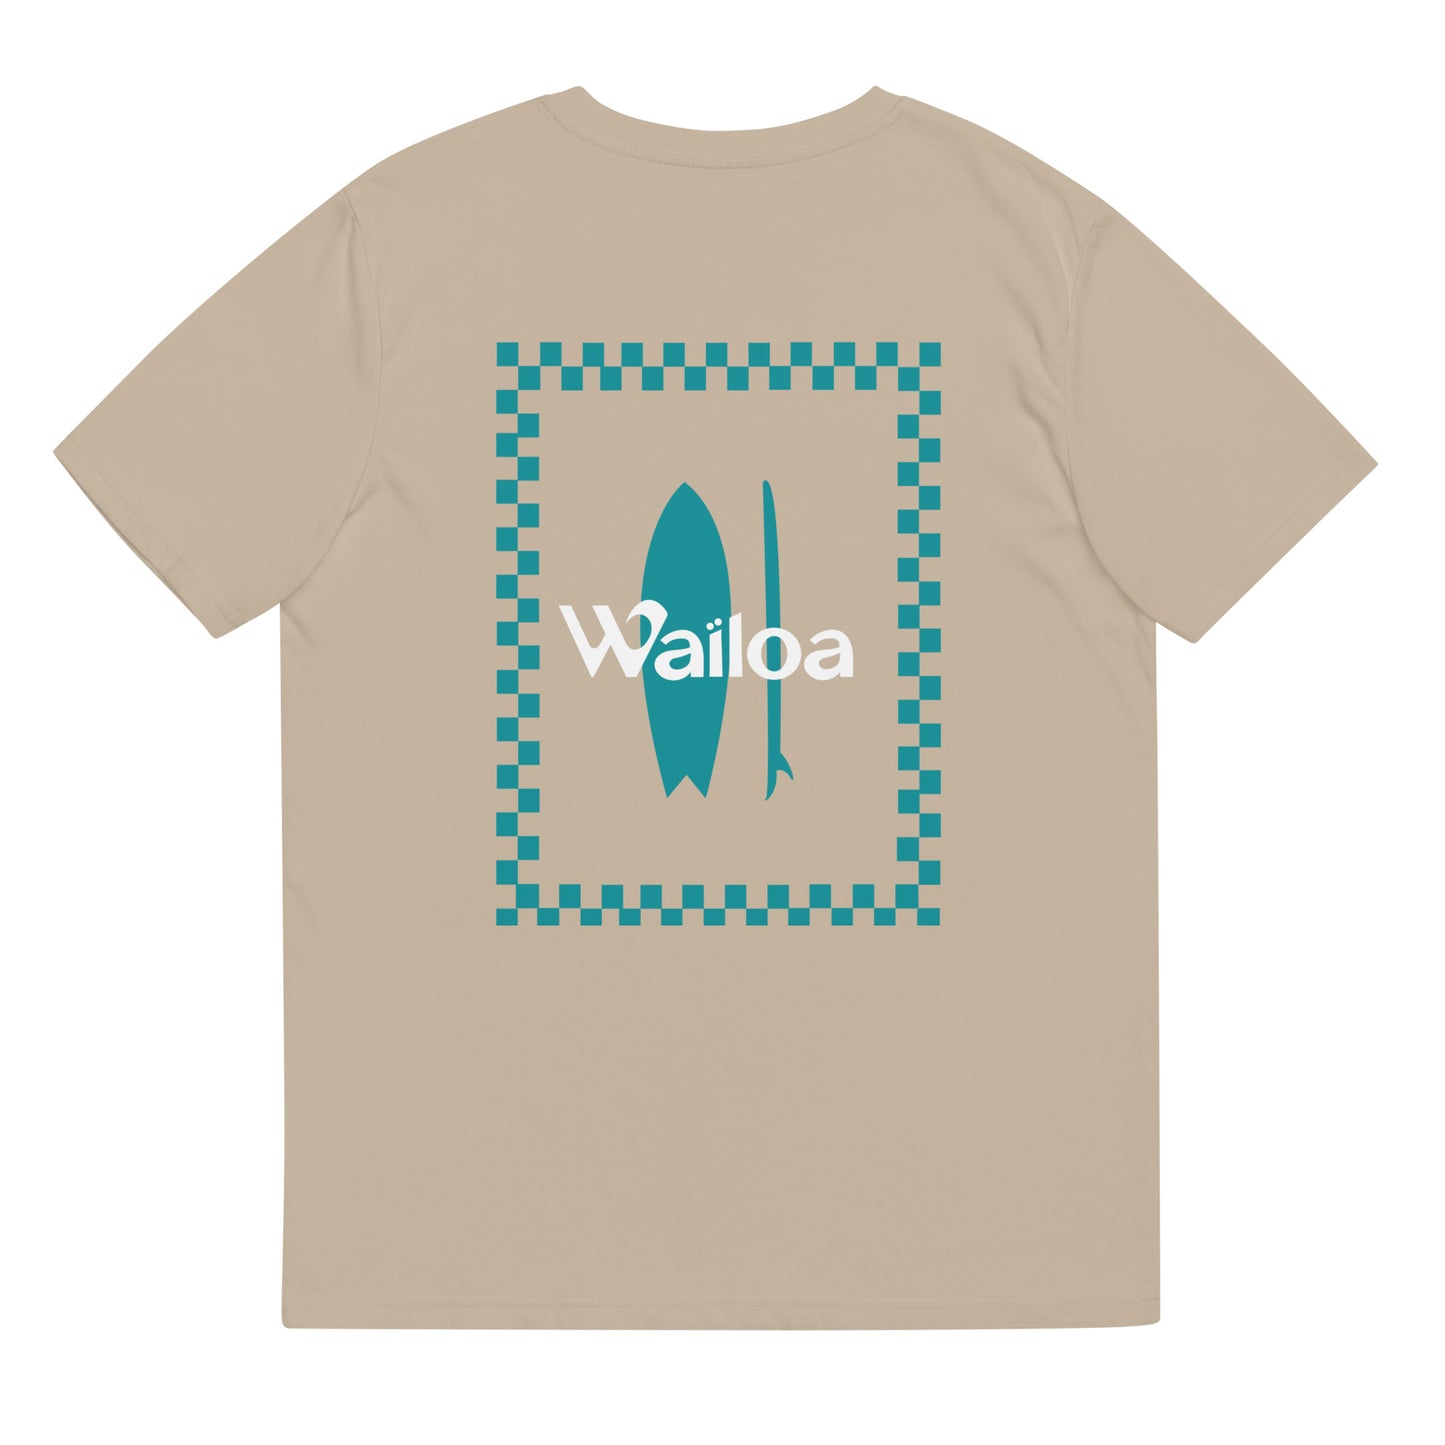 T-shirt unisex coton bio carreaux/surf Waïloa beige/bleu